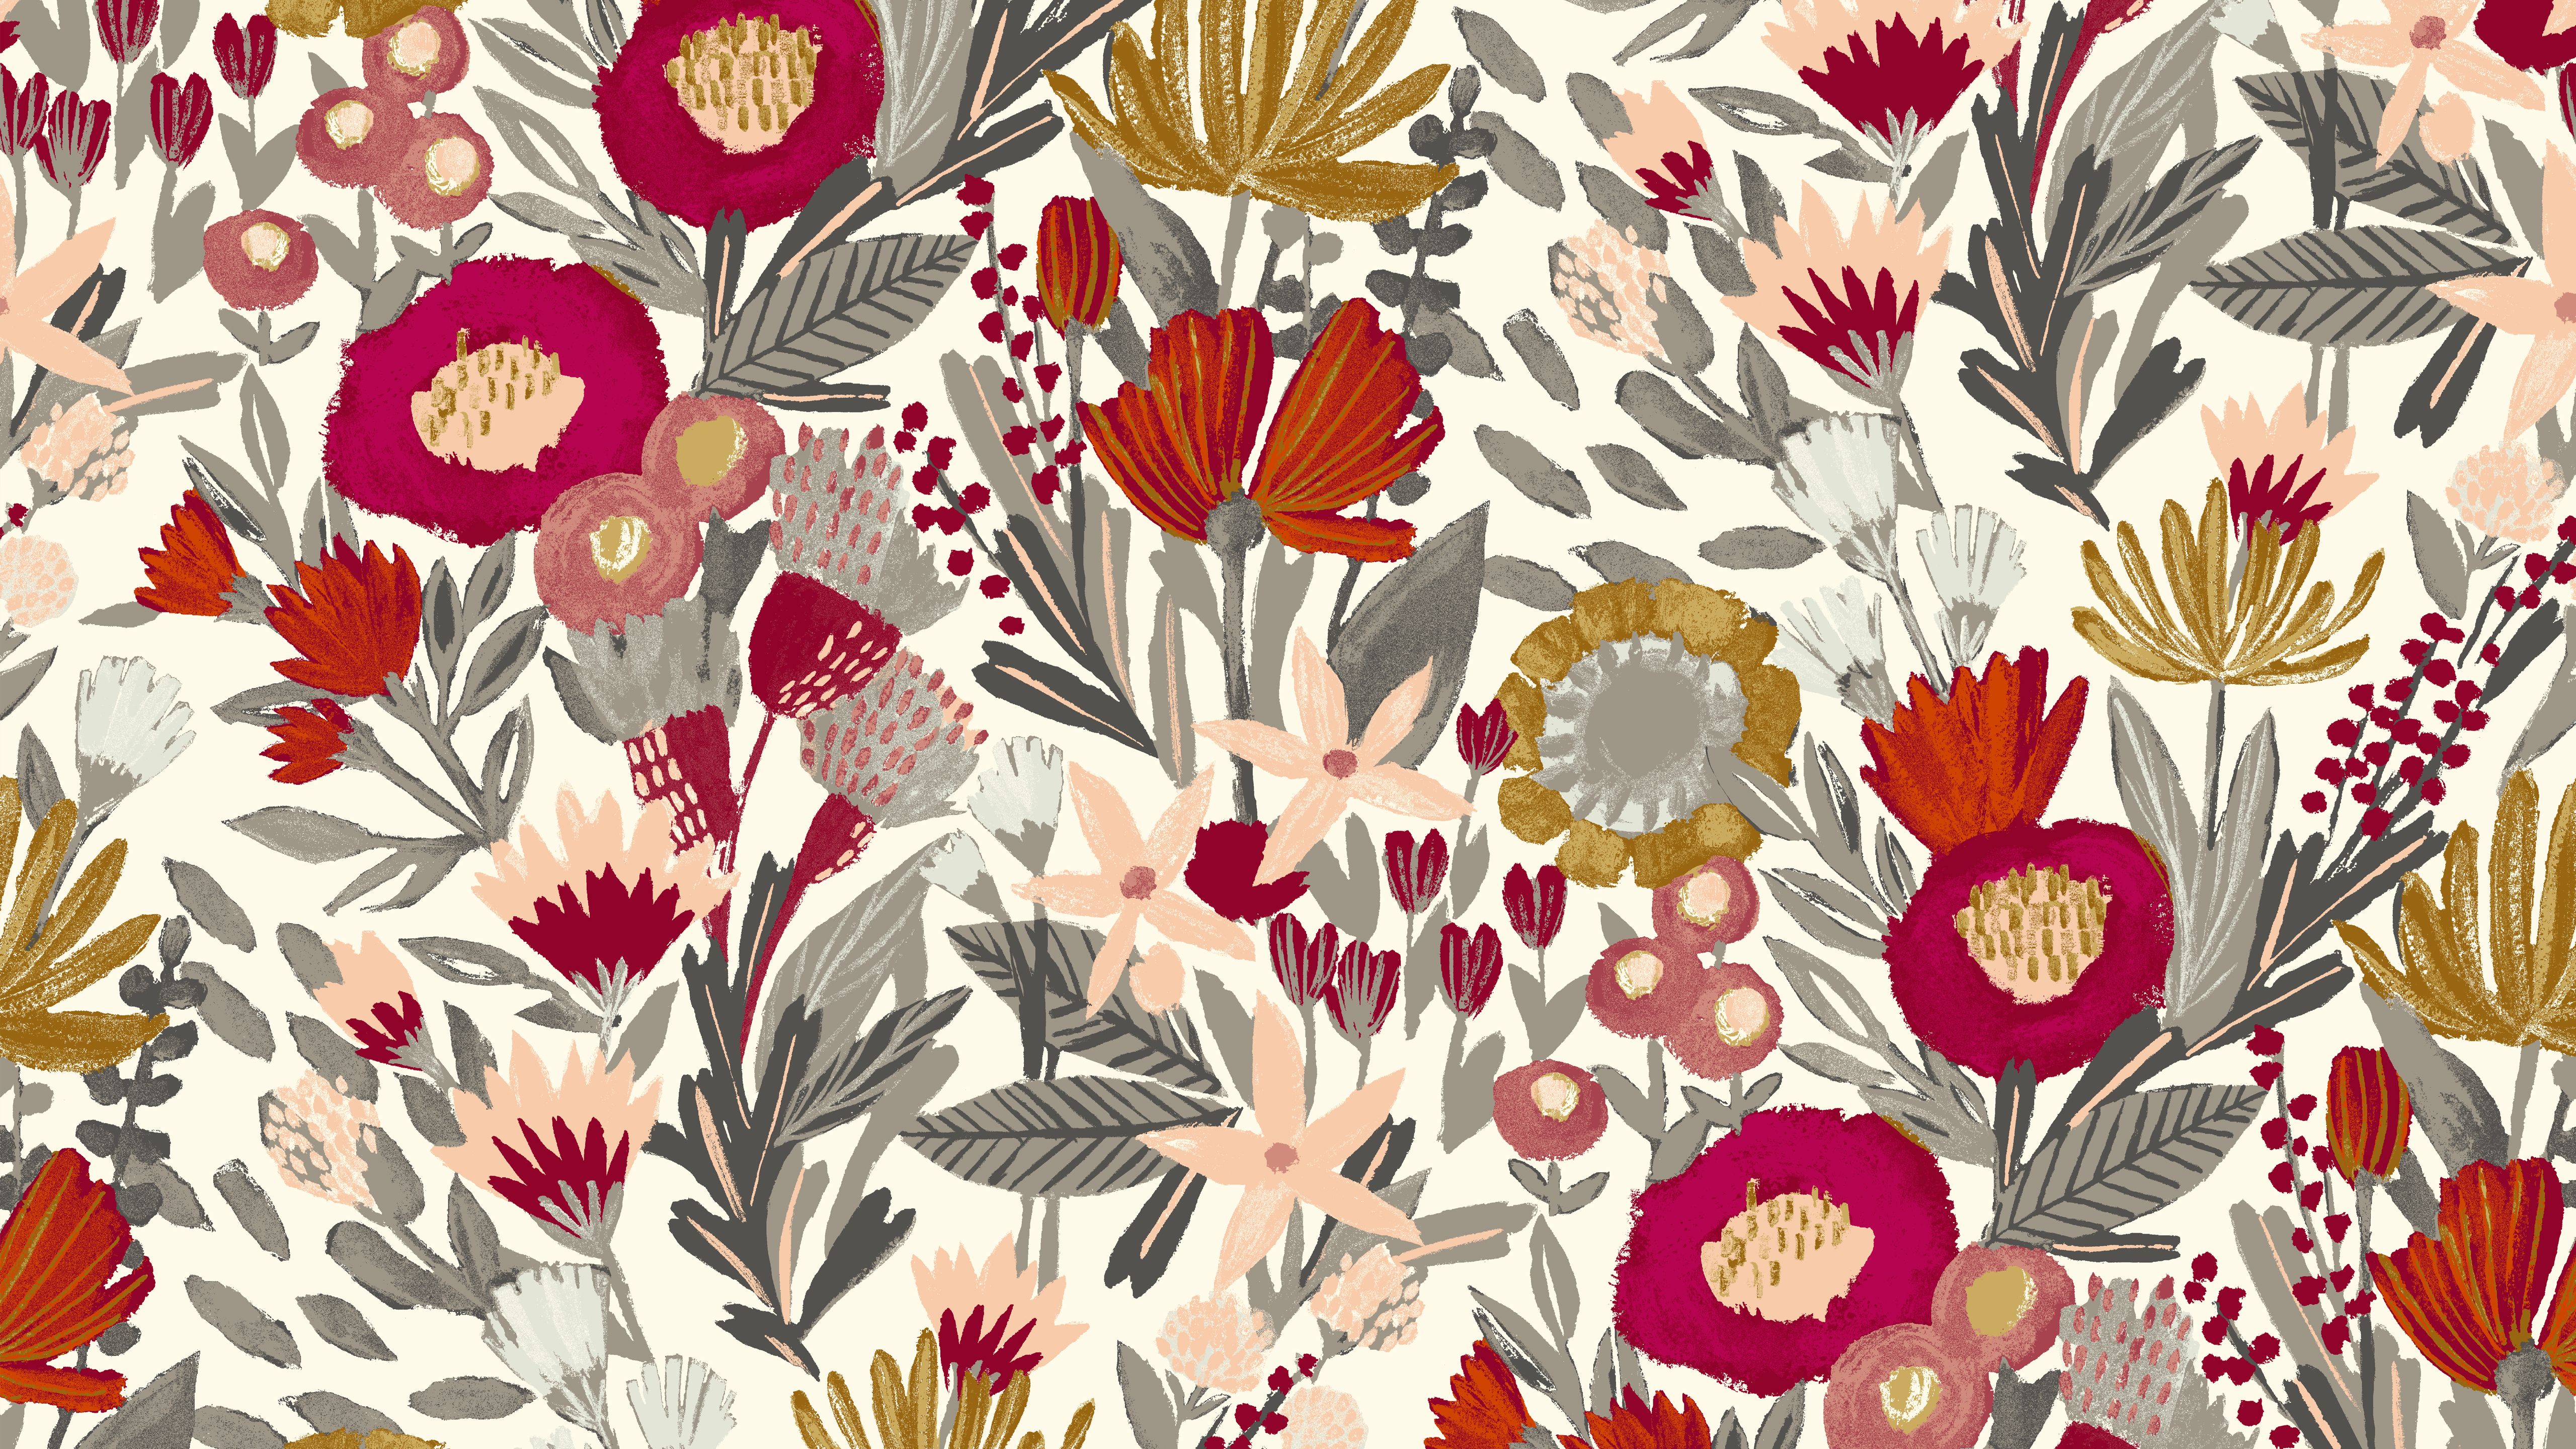 Autumn Flowers Desktop Wallpaper At Wallpaperbro